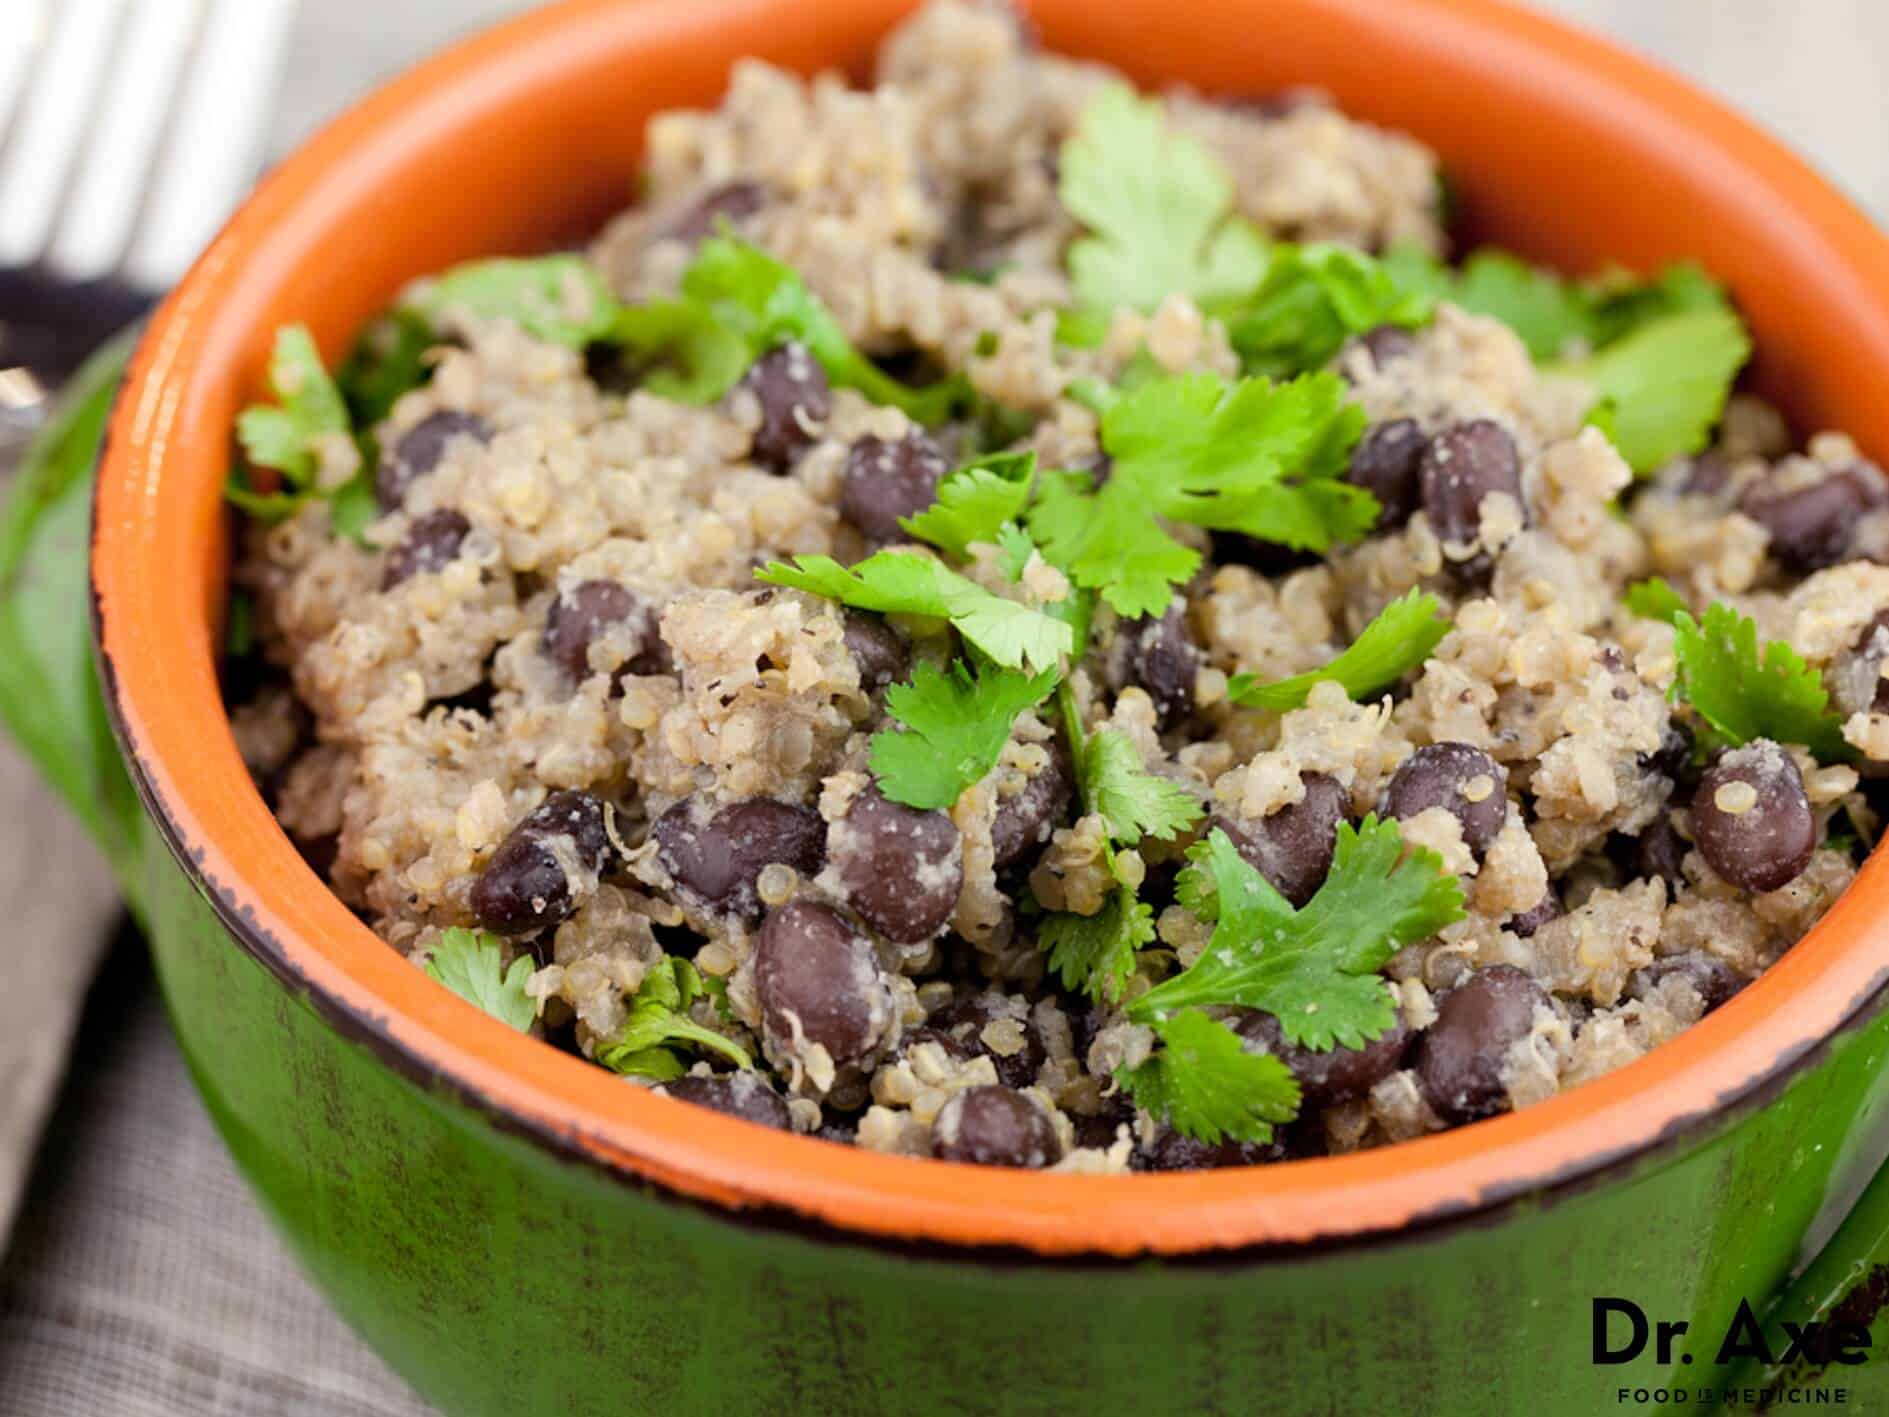 Black bean quinoa salad recipe - Dr. Axe